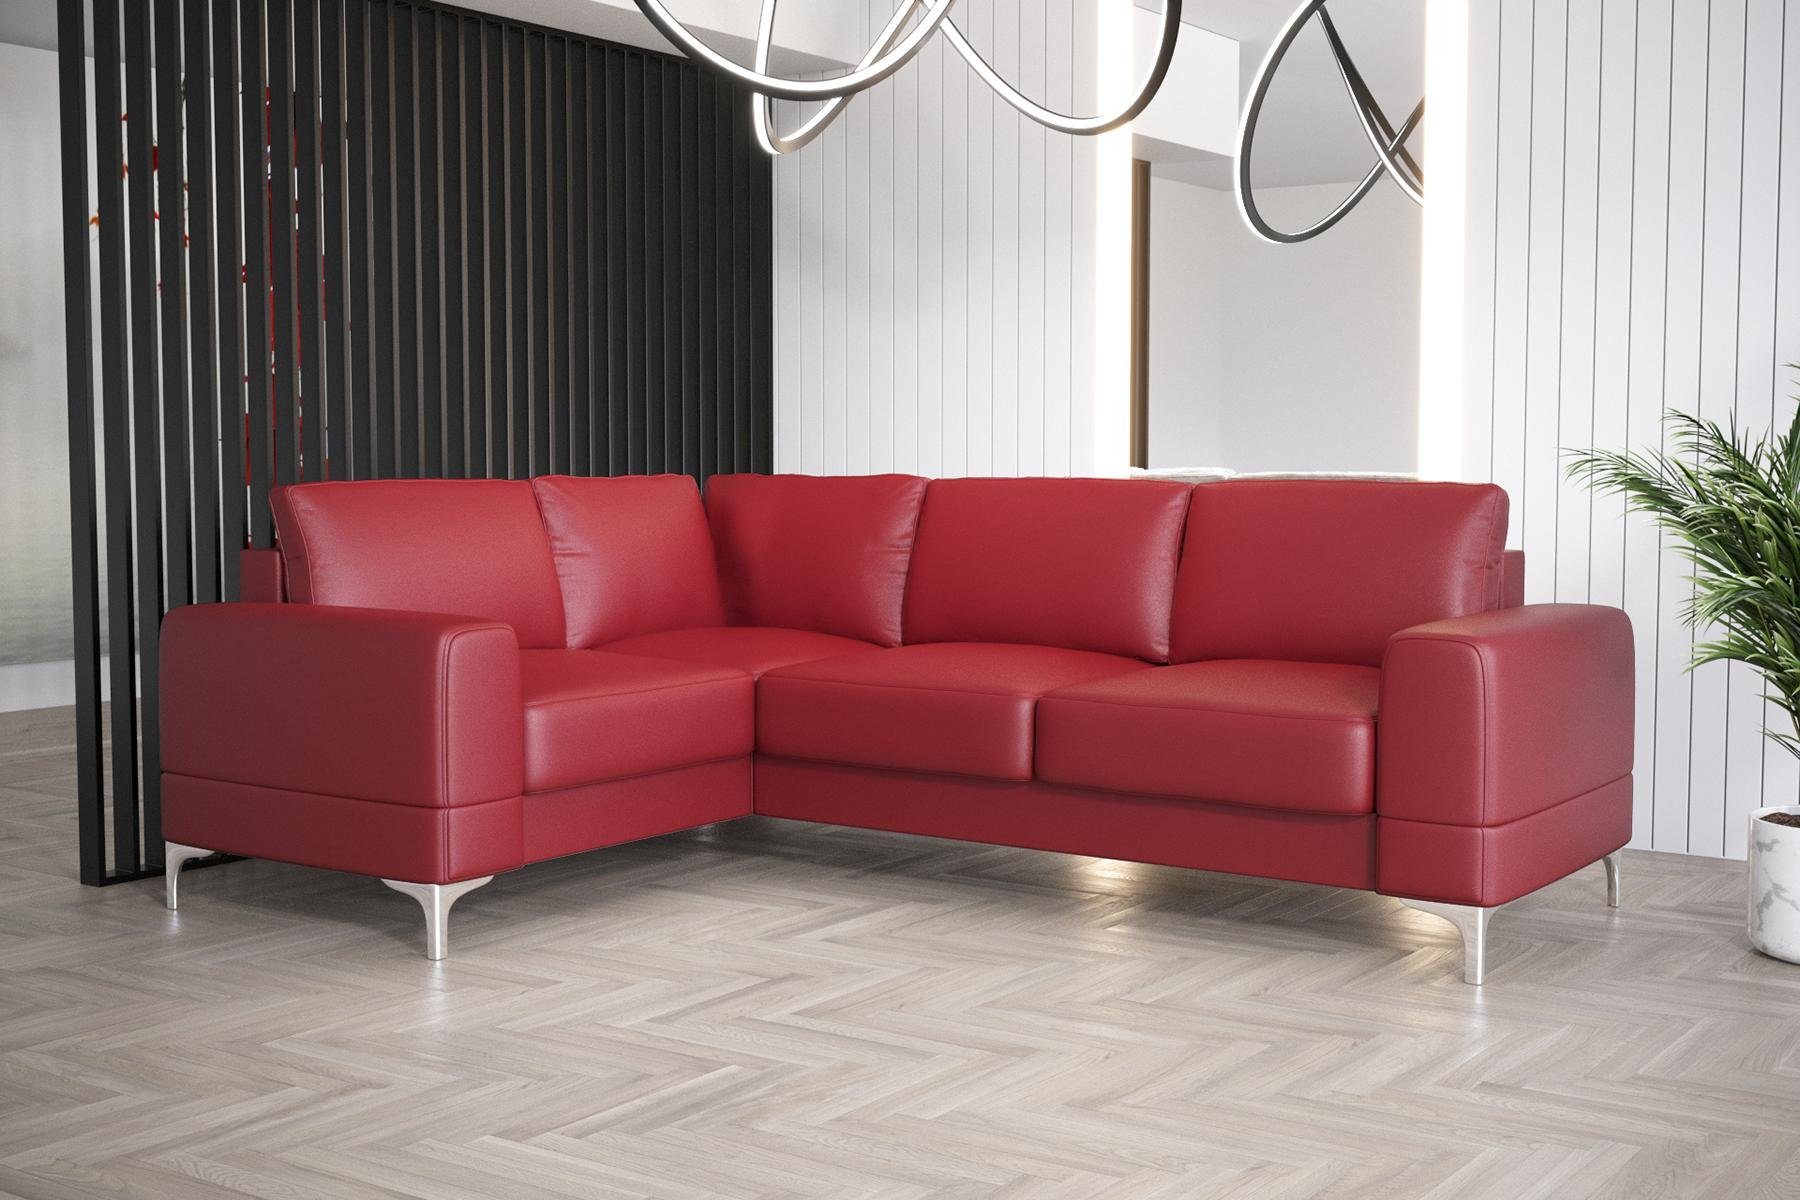 JVmoebel Ecksofa Wohnzimmer Sofa Europe L-Form Luxus Ecksofa Möbel Couch, Modern in Made Rot